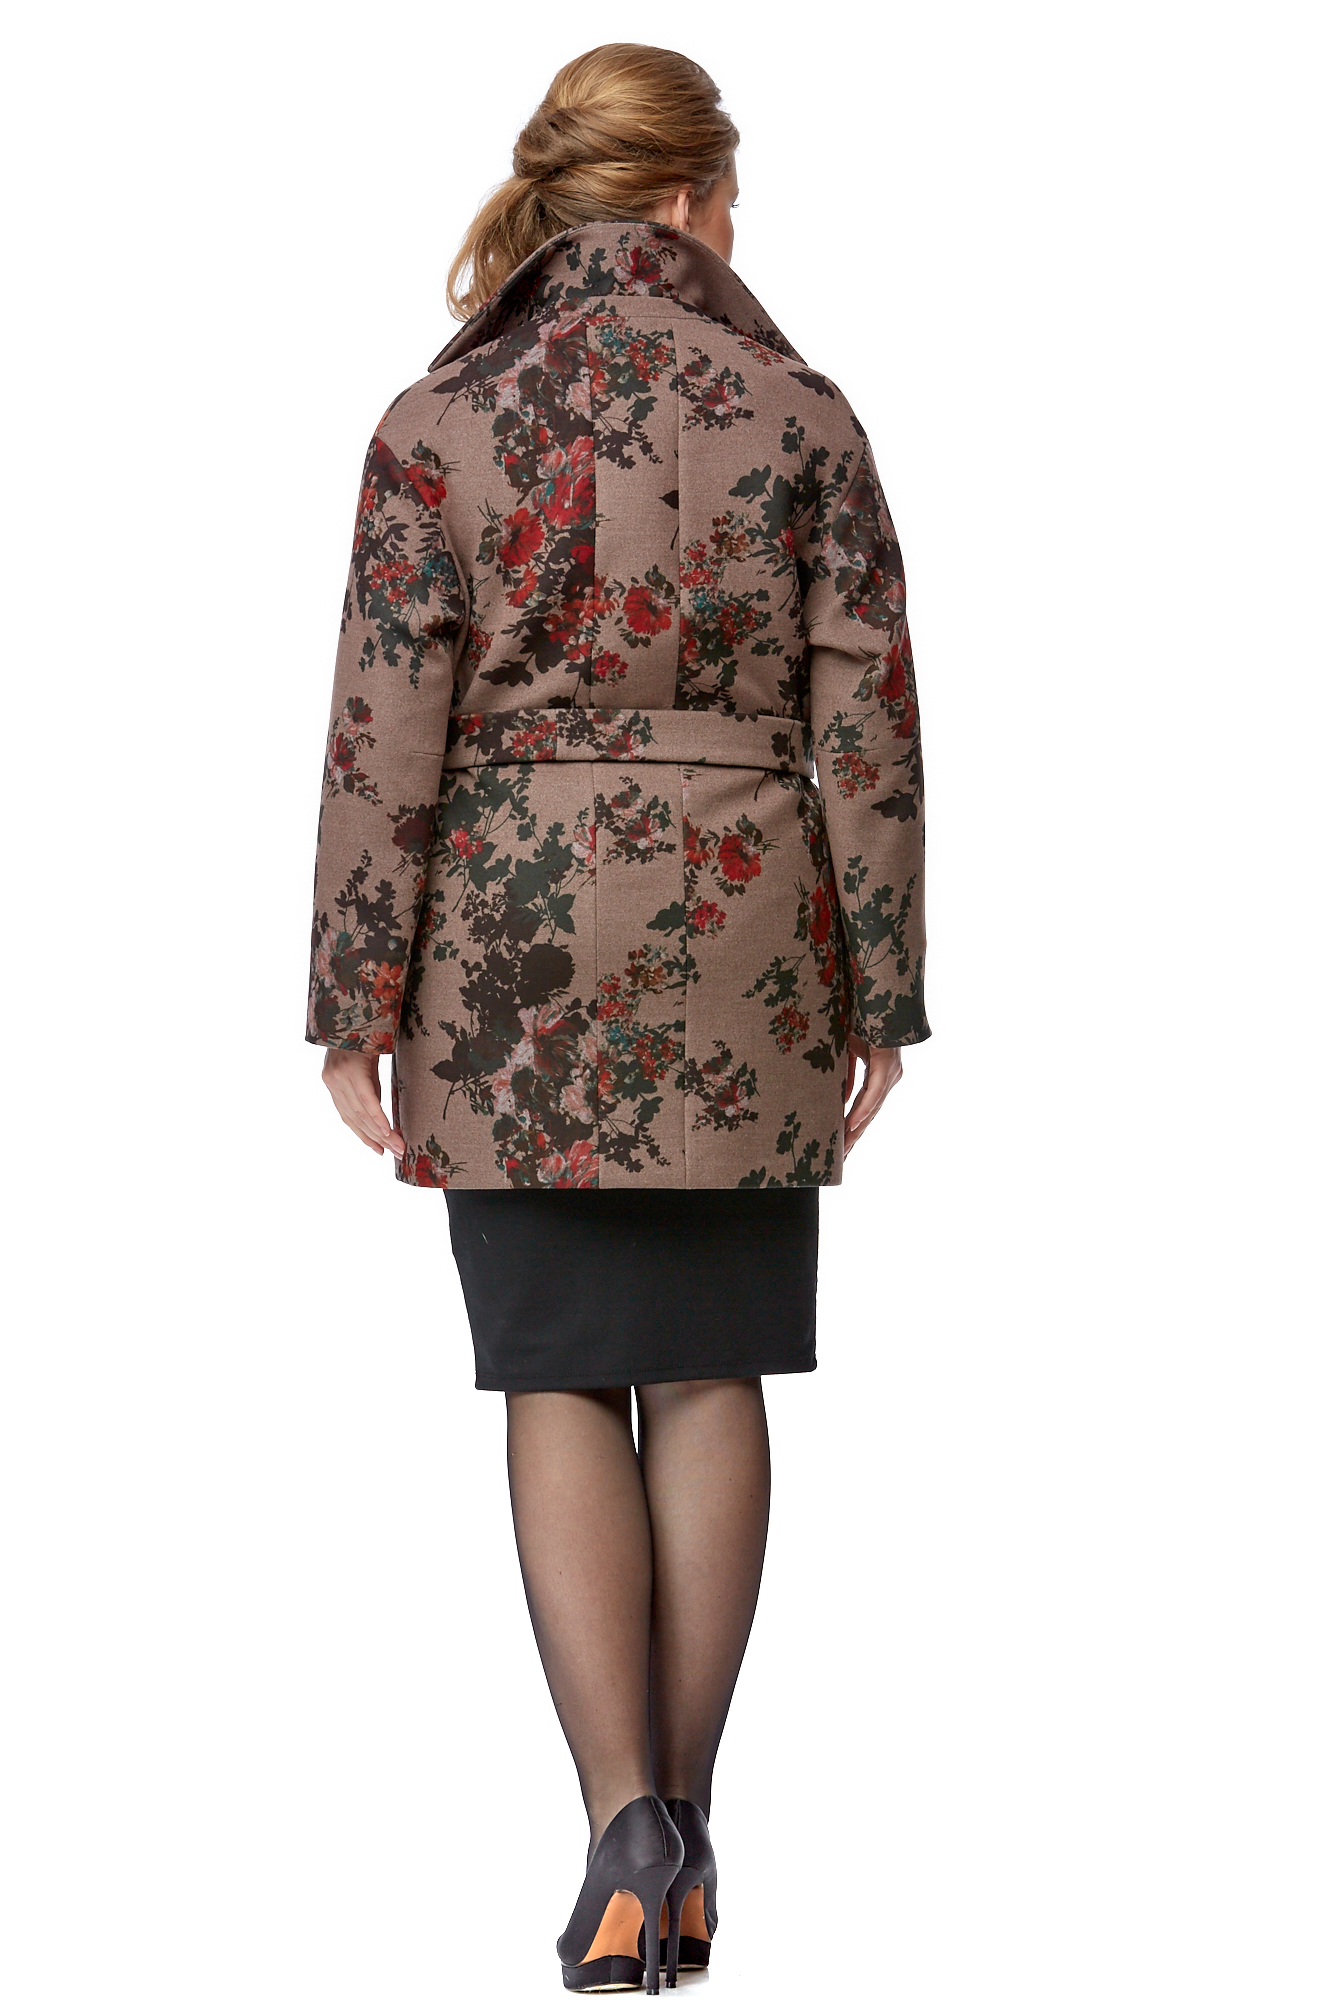 Женское пальто из текстиля с воротником 8003135-3